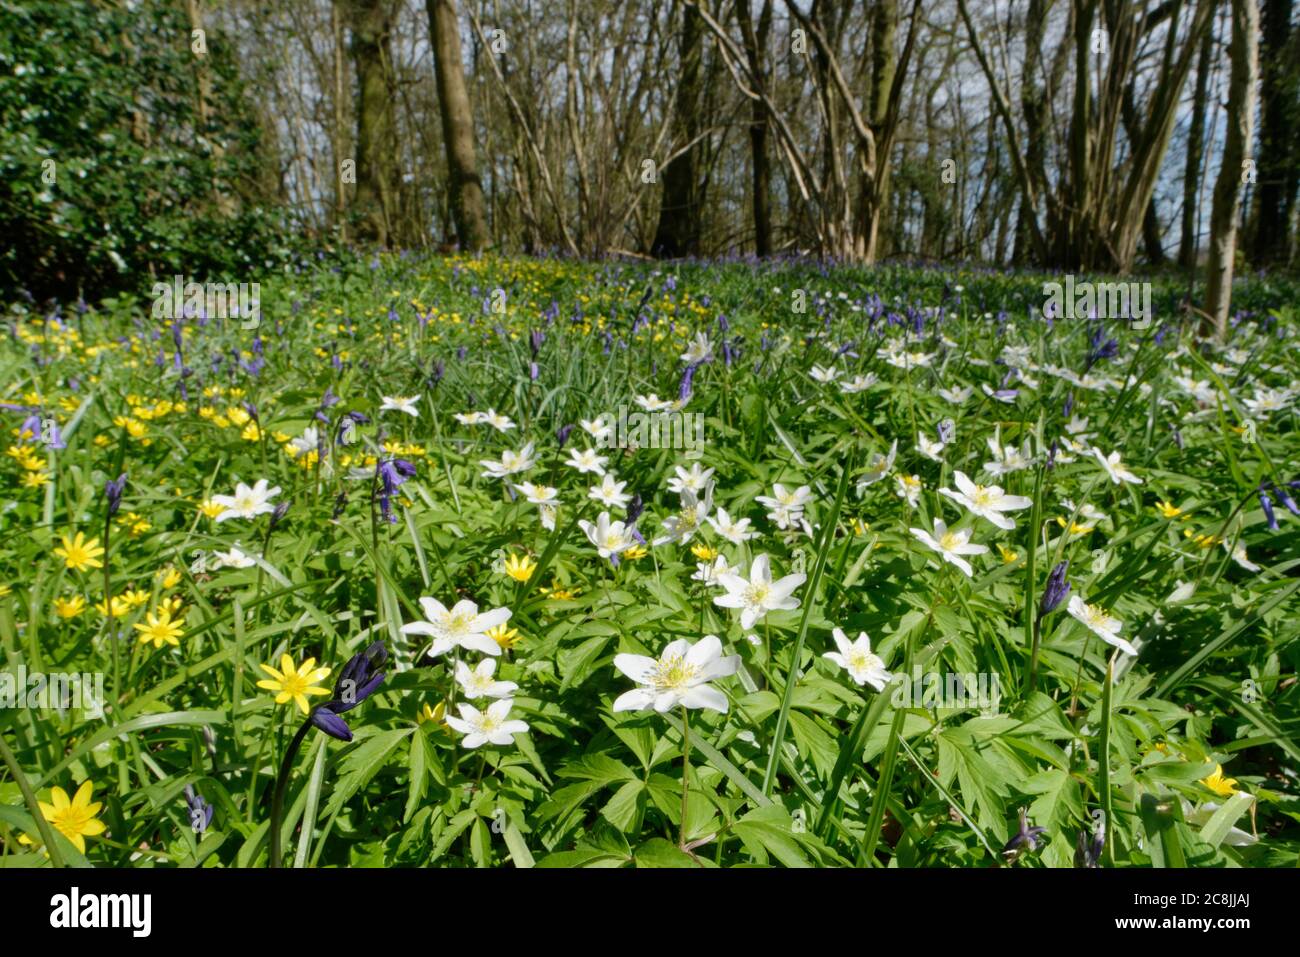 Anemoni di legno (Anemone nemorosa), celandine minori (Ranunculus ficaria) e Bluebells (Hyacinthoides non-scripta) fiorite in sottobosco Regno Unito Foto Stock